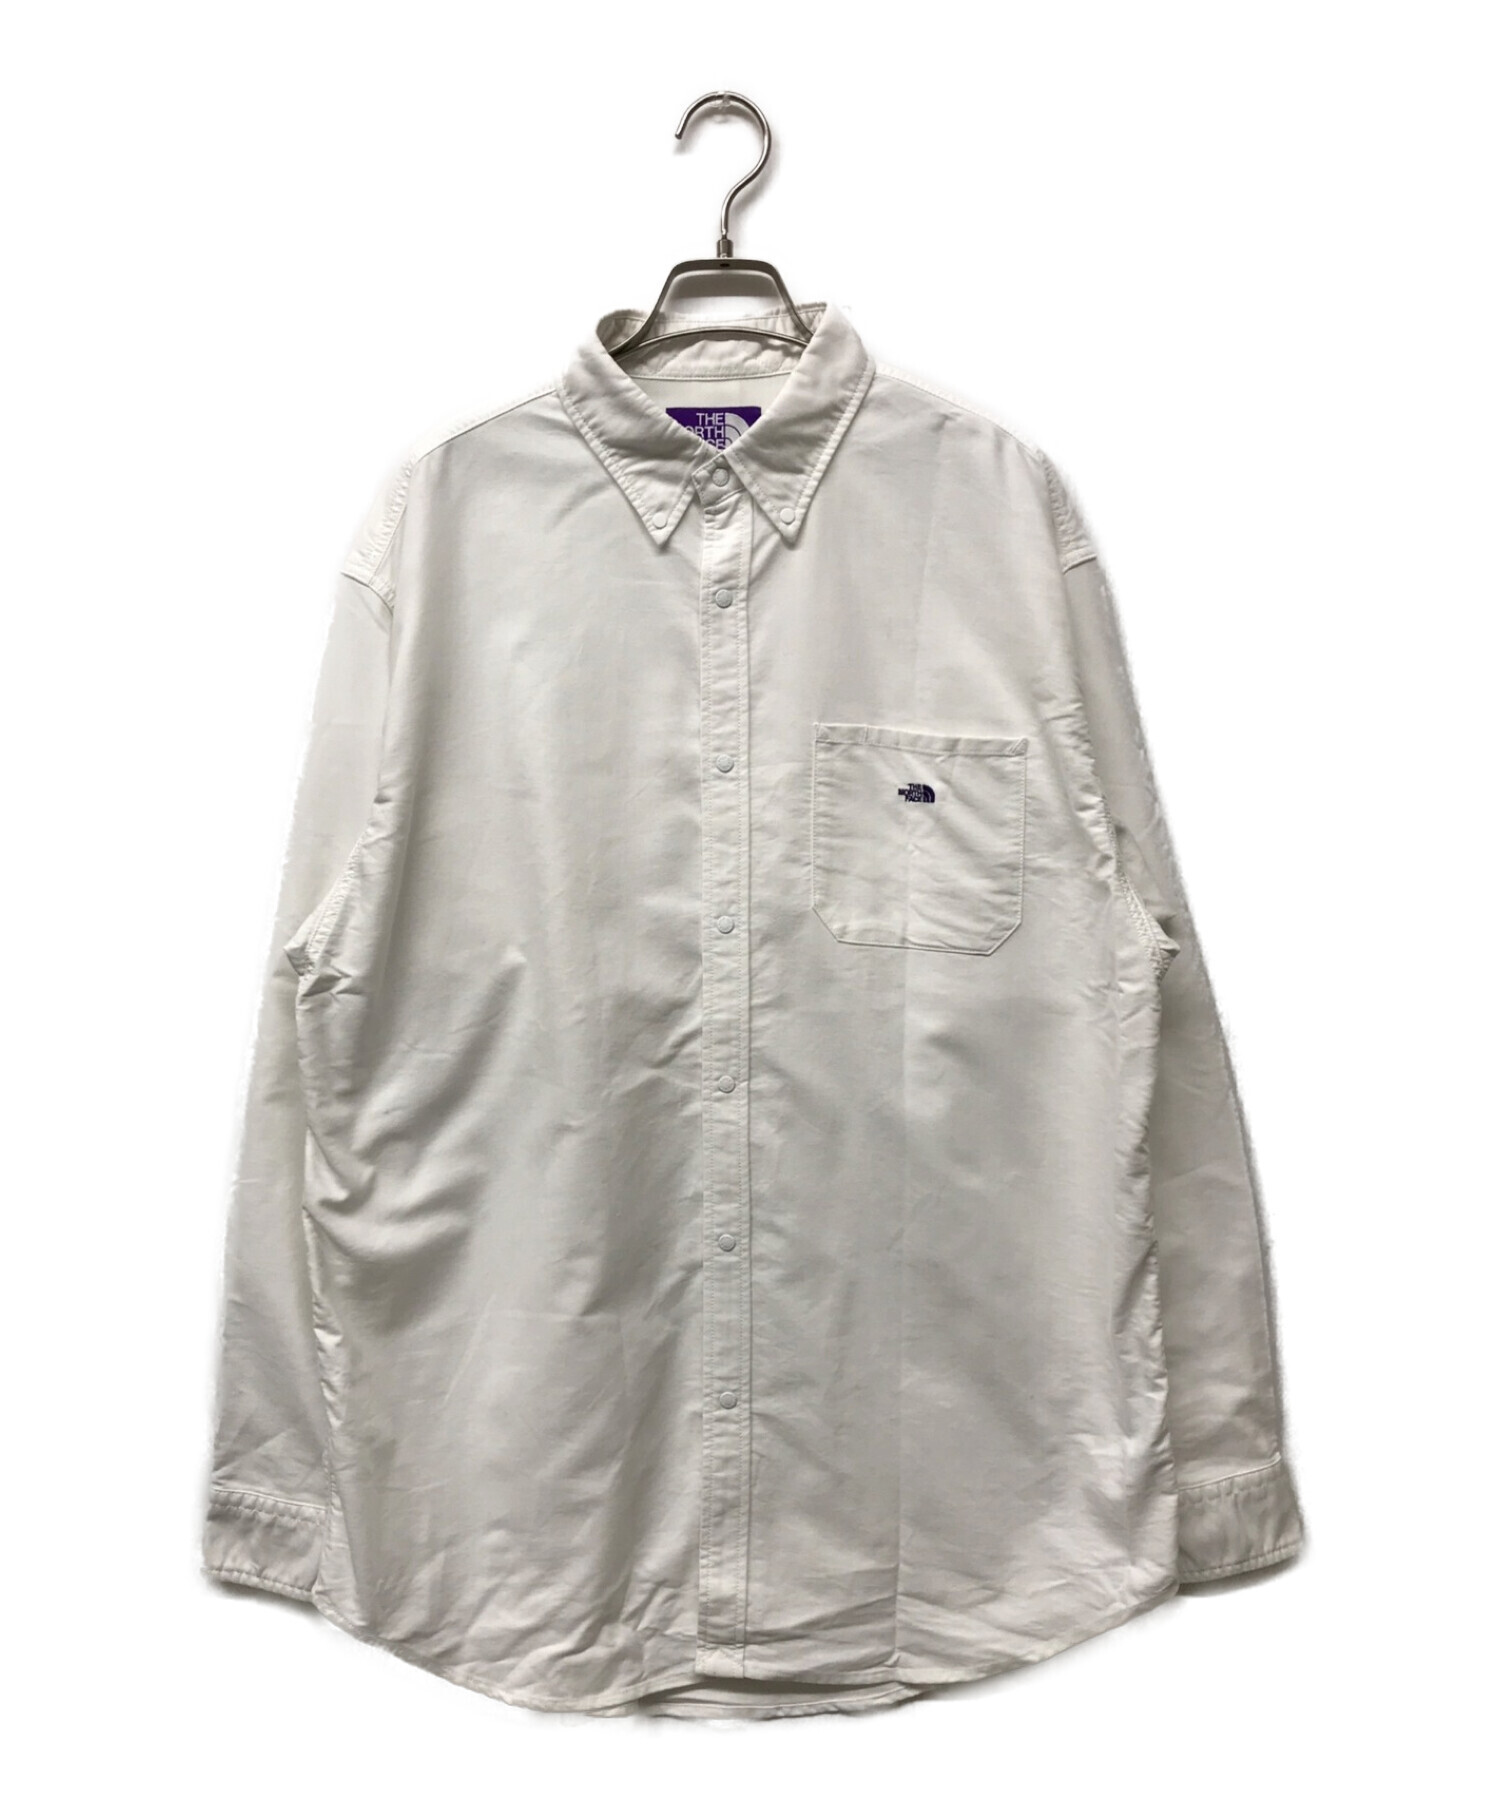 THE NORTHFACE PURPLELABEL (ザ・ノースフェイス パープルレーベル) Cotton Polyester OX B.D.  Shirt　 NT3118N　シャツ ホワイト サイズ:L